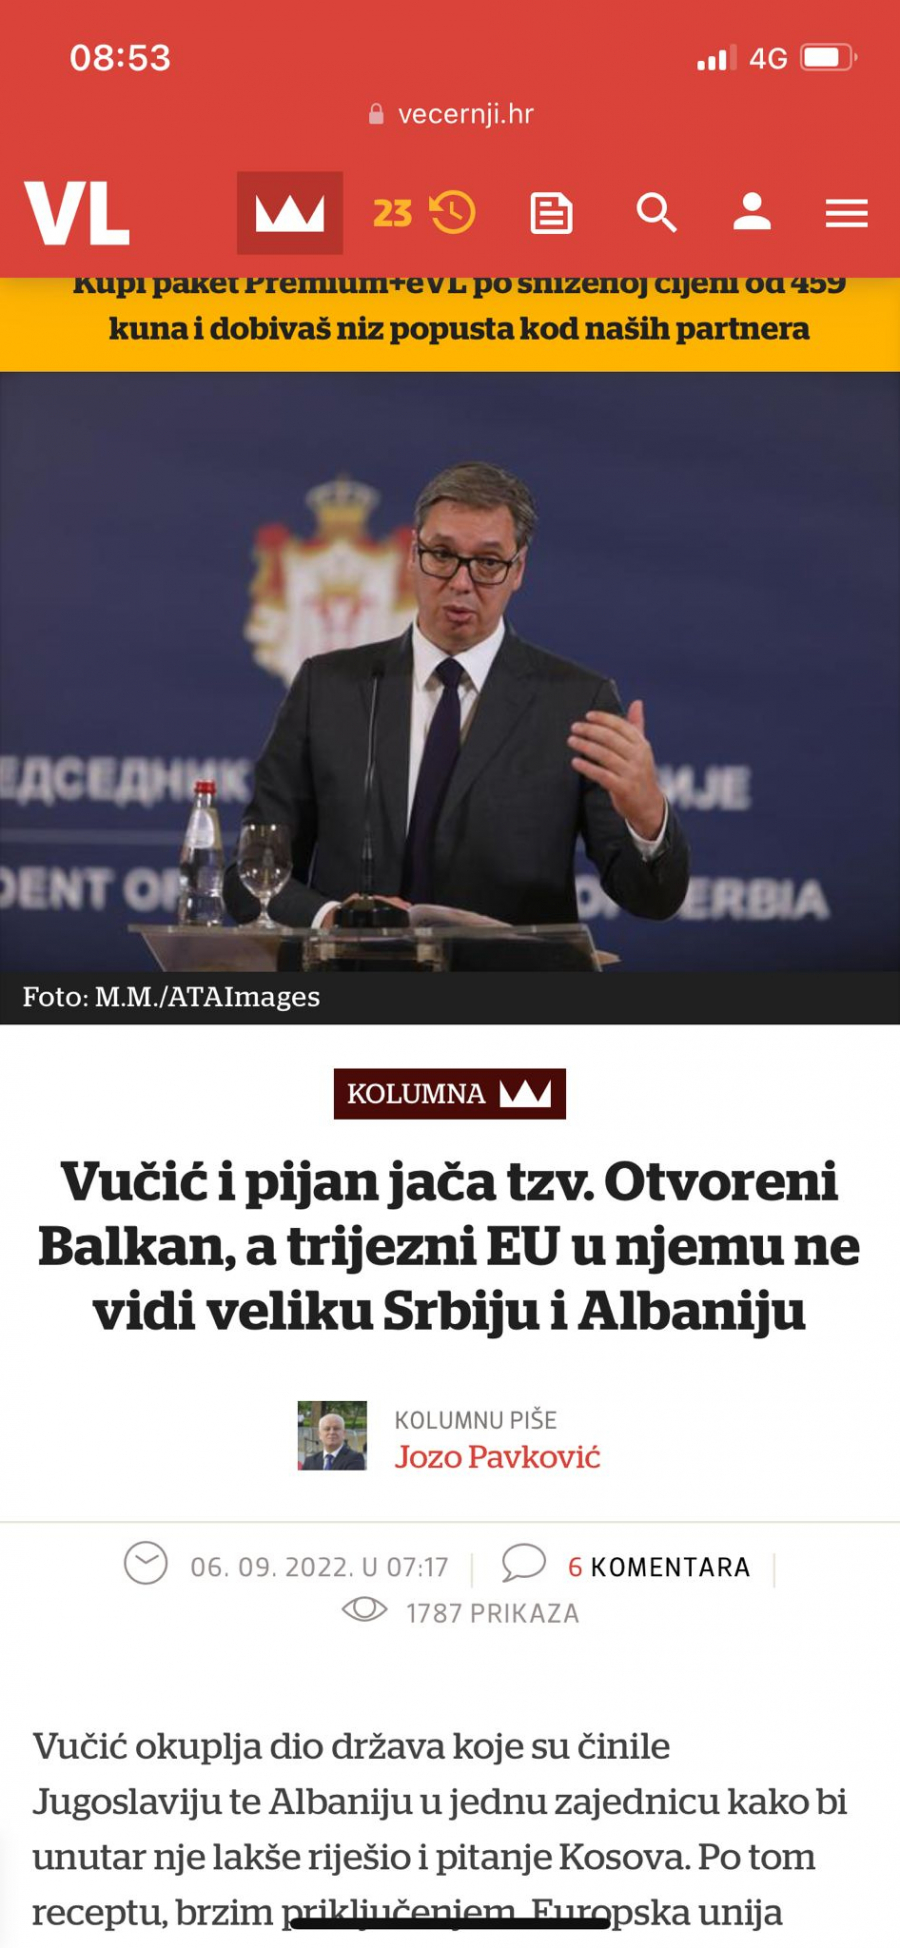 USTAŠA PLENKOVIĆ NE PRESTAJE DA VREĐA I HUŠKA Zavide Vučiću što je okupio lidere zemalja regiona